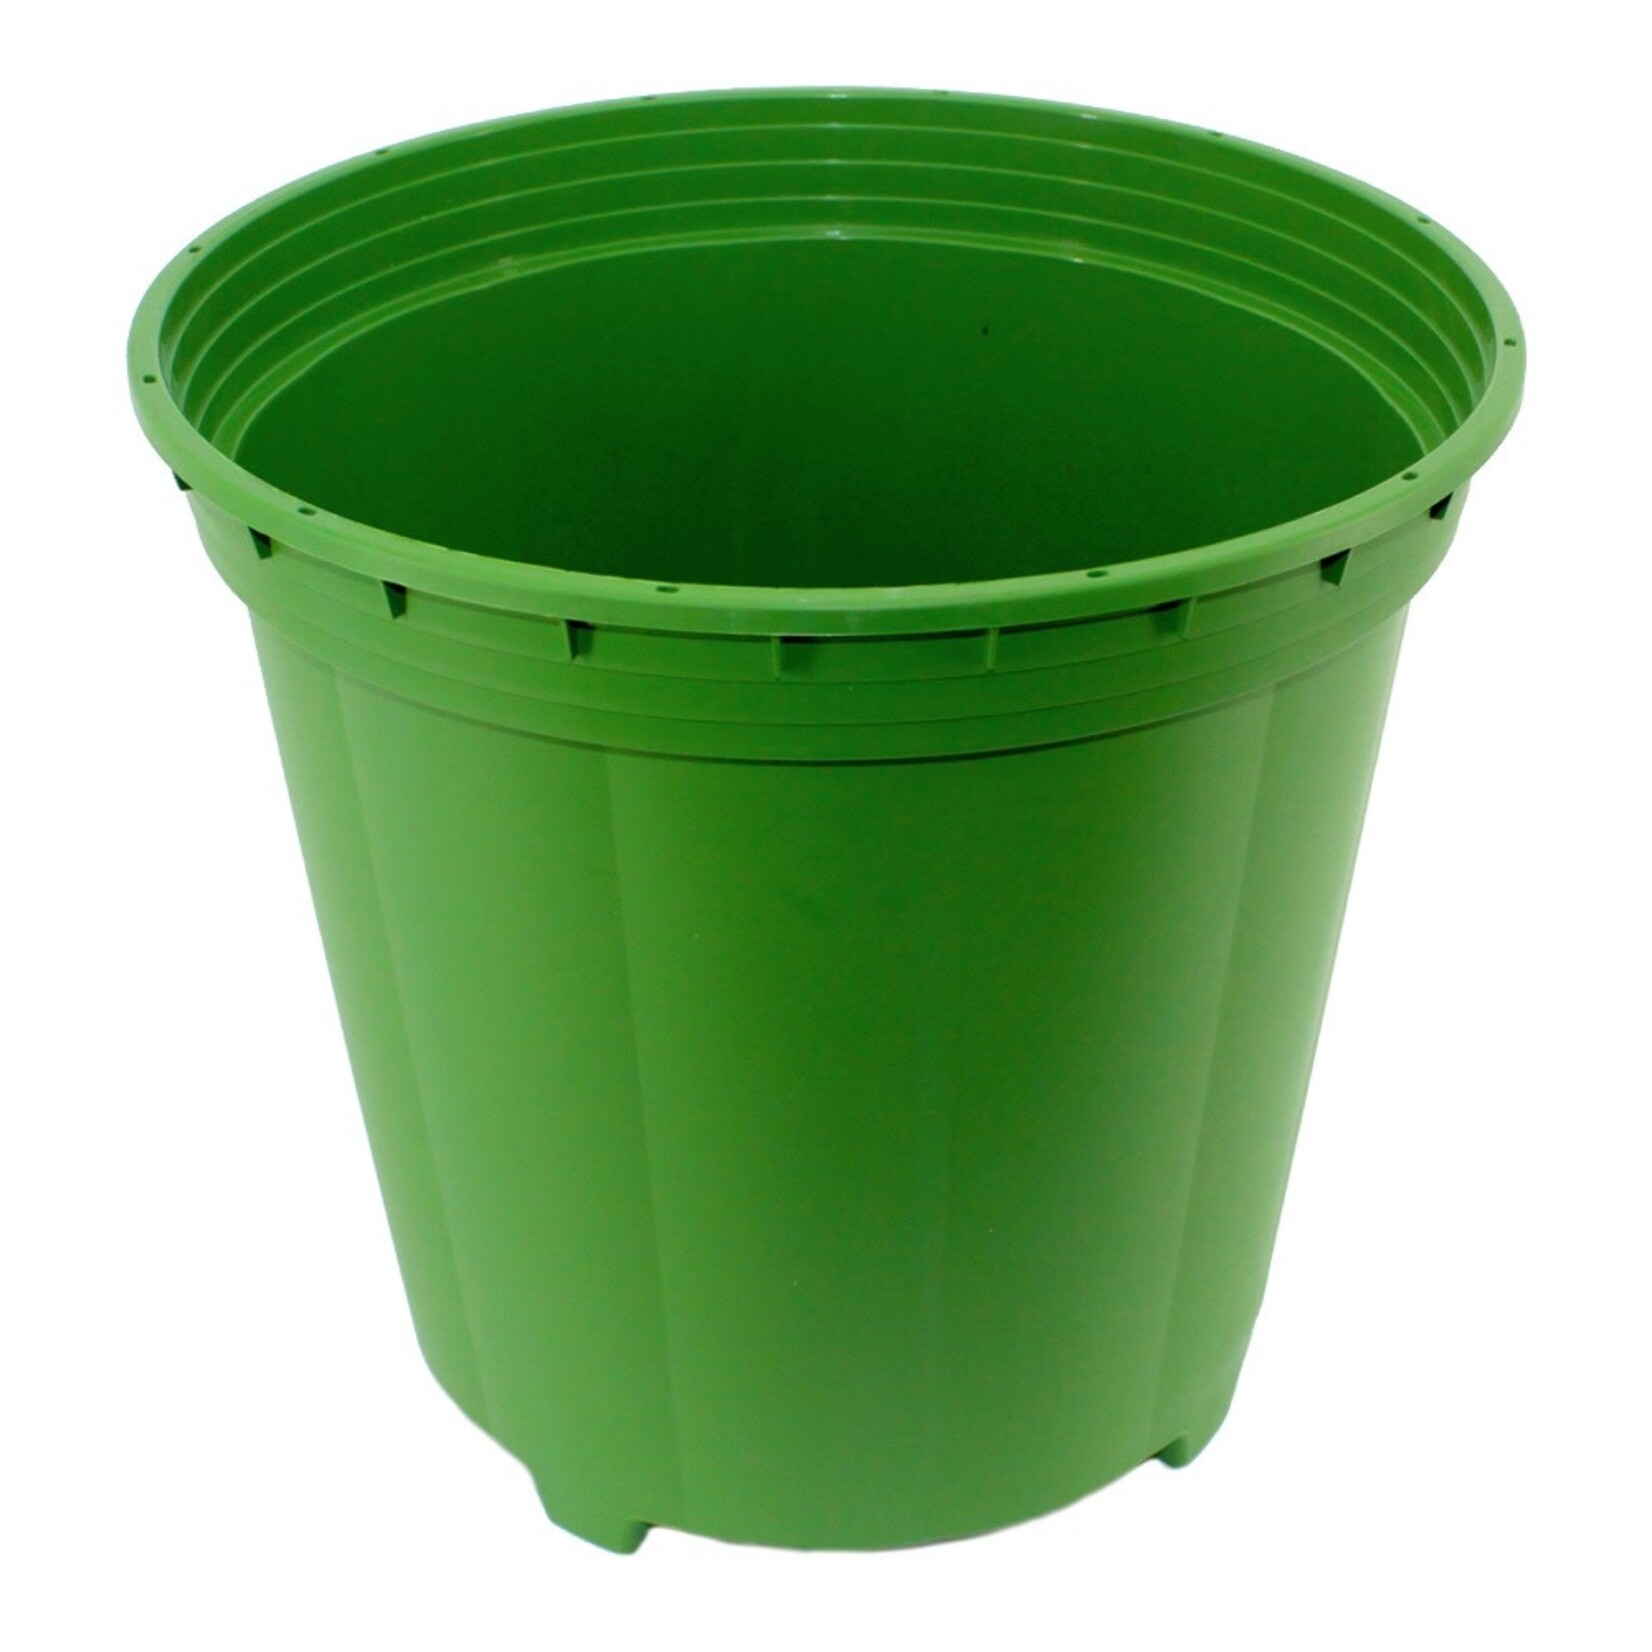 Flora Flex PotPro™ | 3 Gallon Premium Nursery Pot | Round